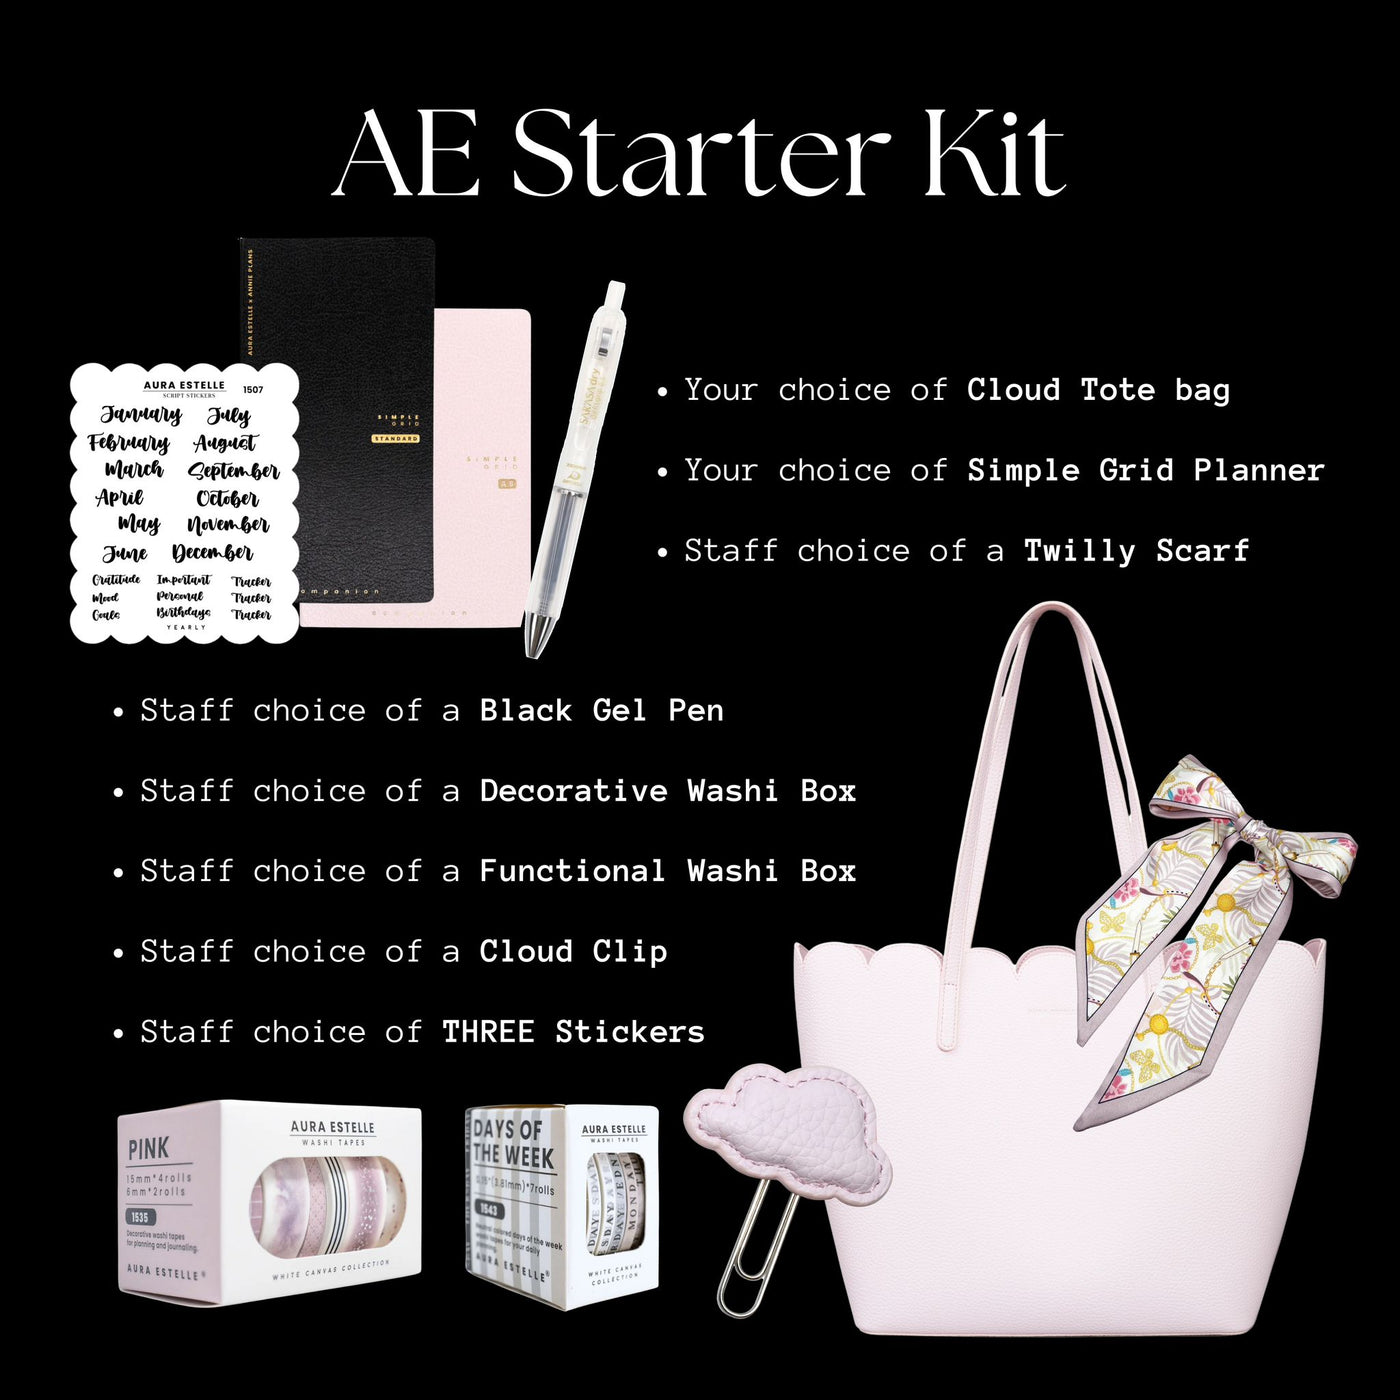 AE Starter Kit